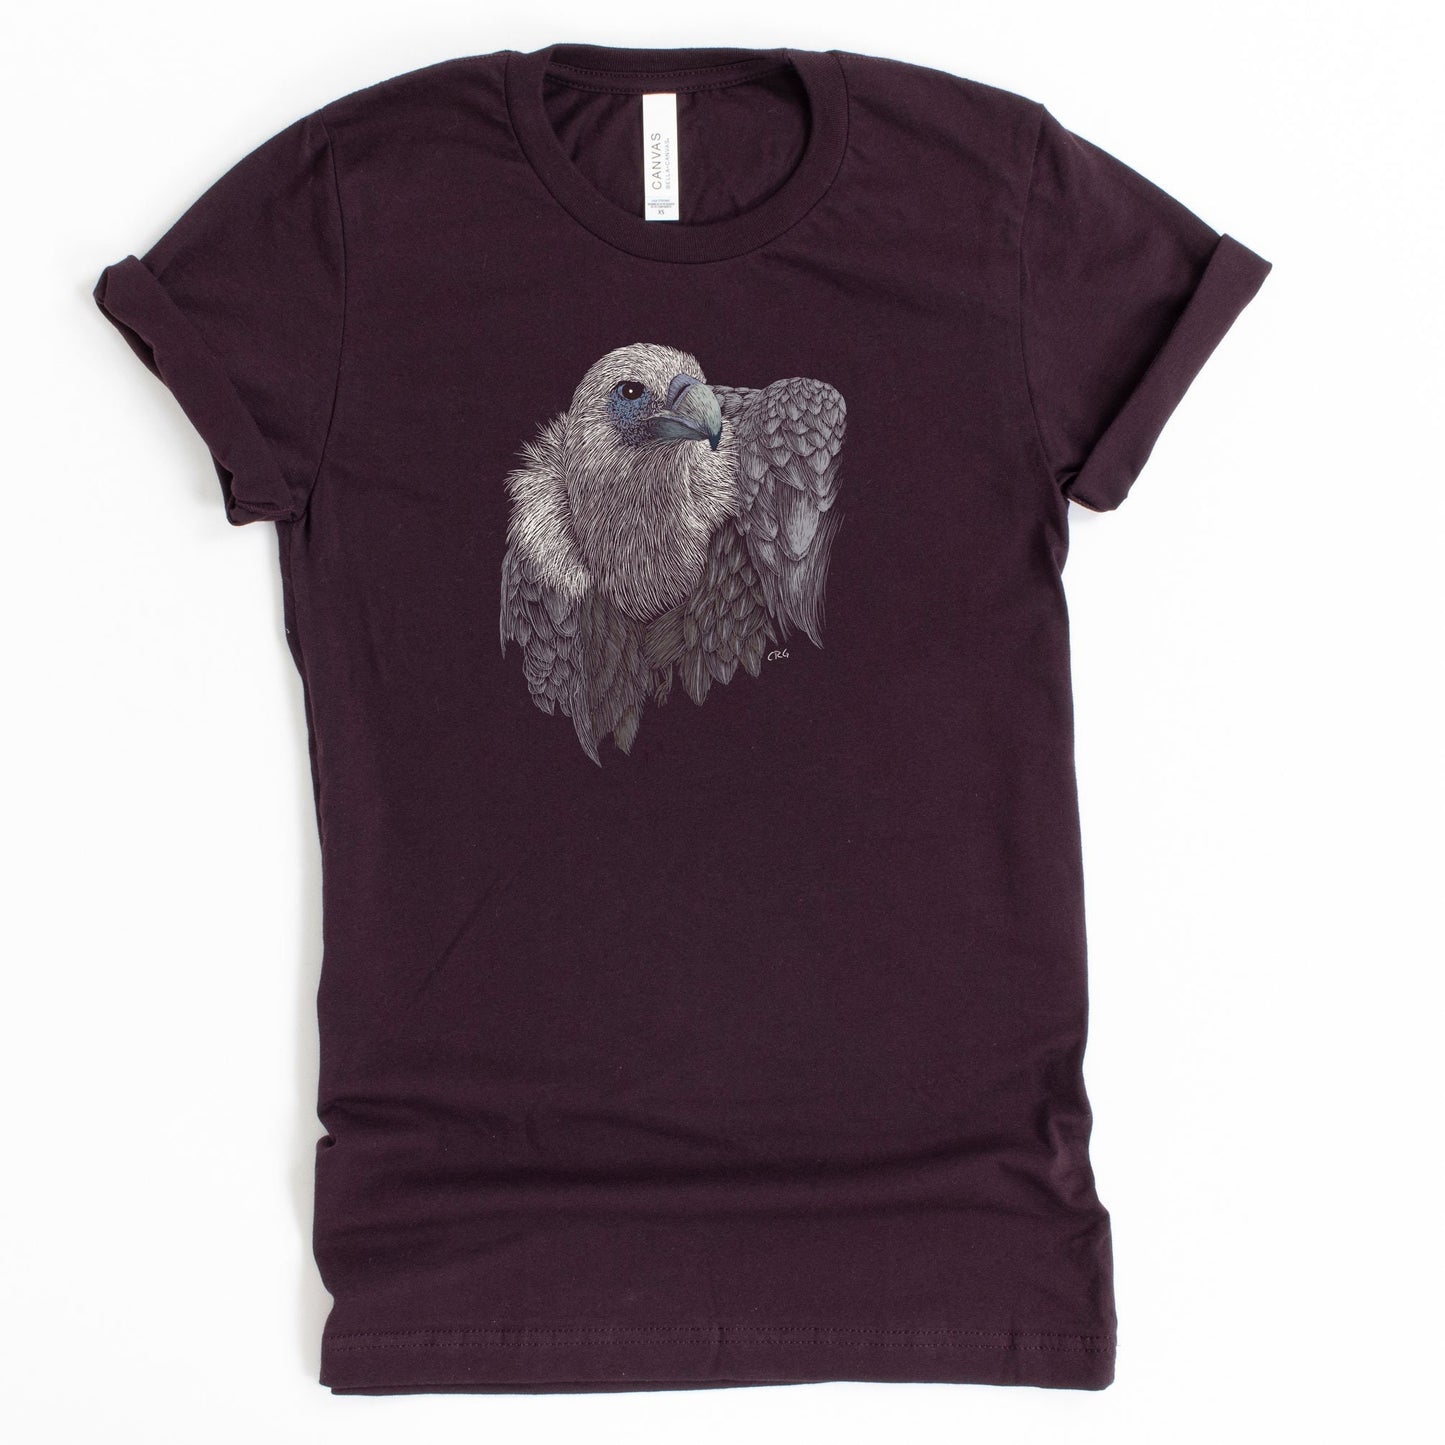 Vulture Shirt